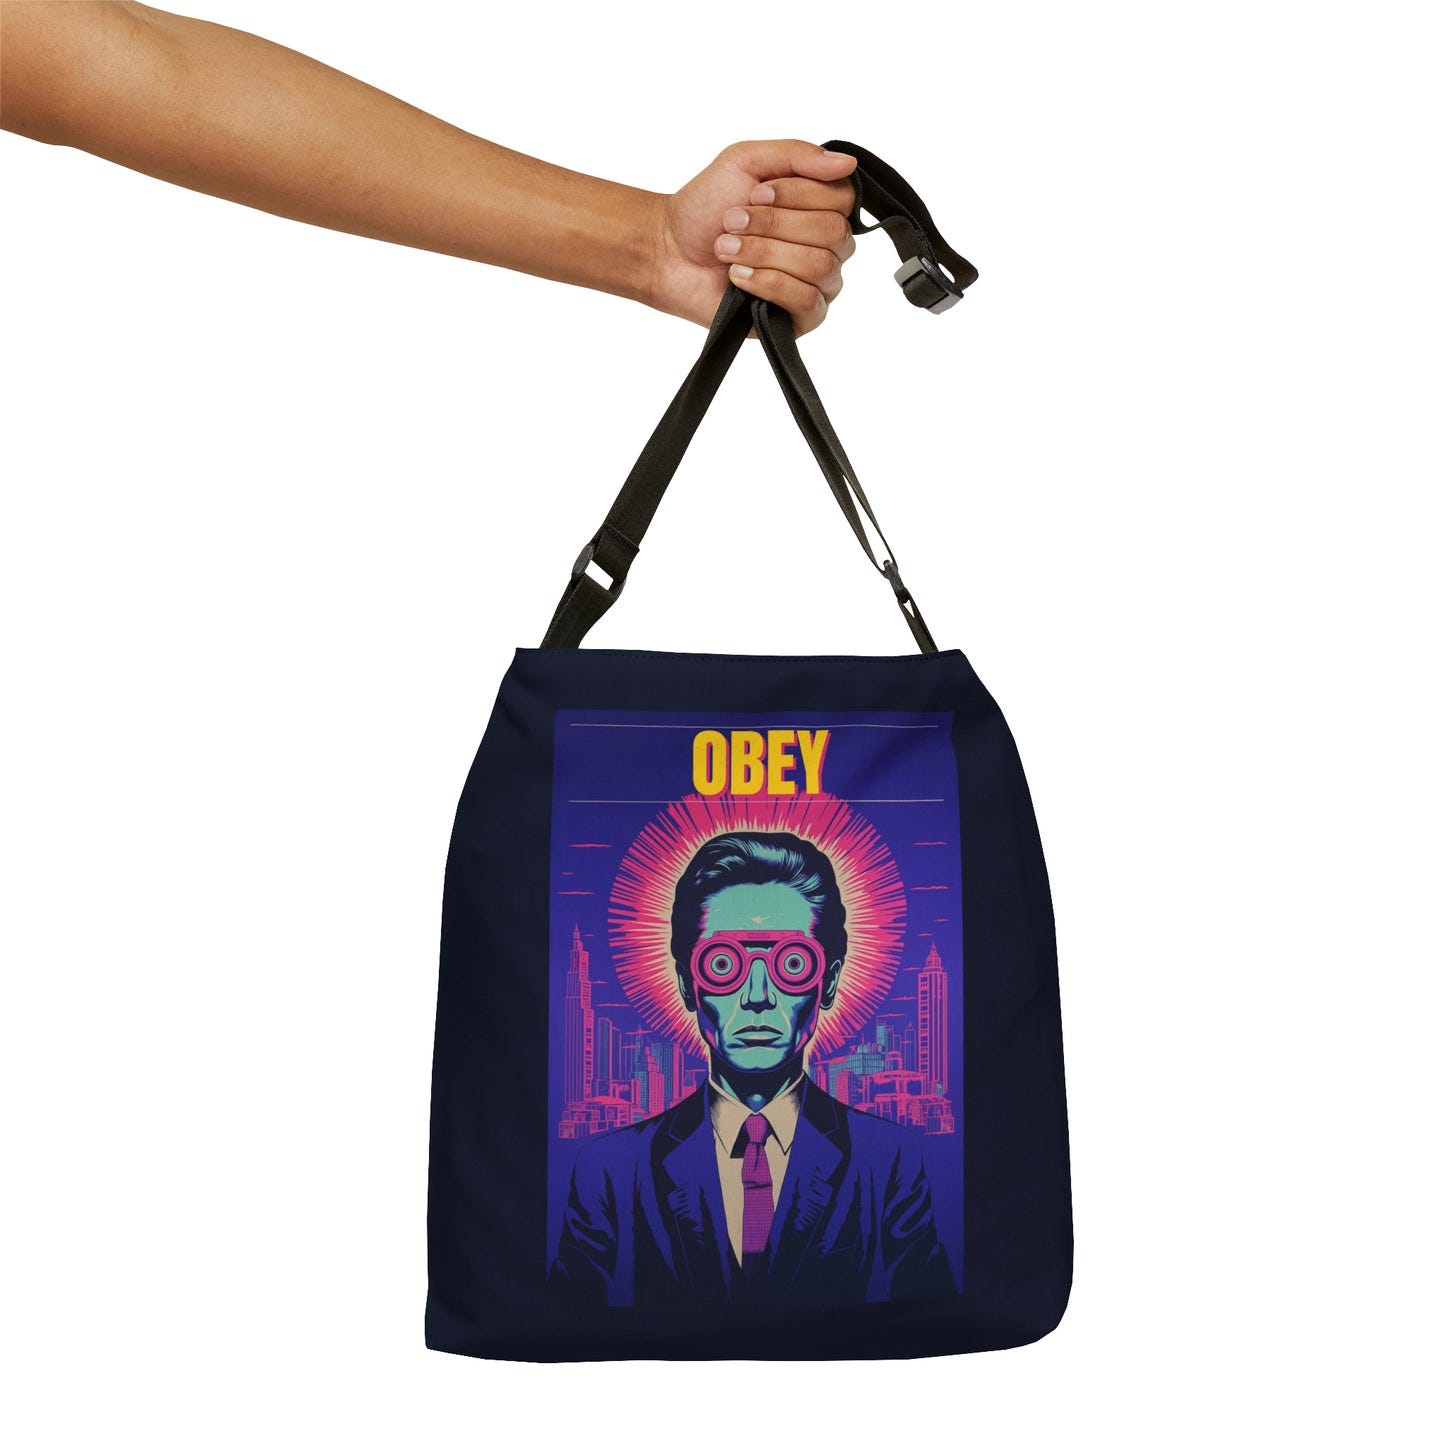 OBEY Adjustable Tote Bag